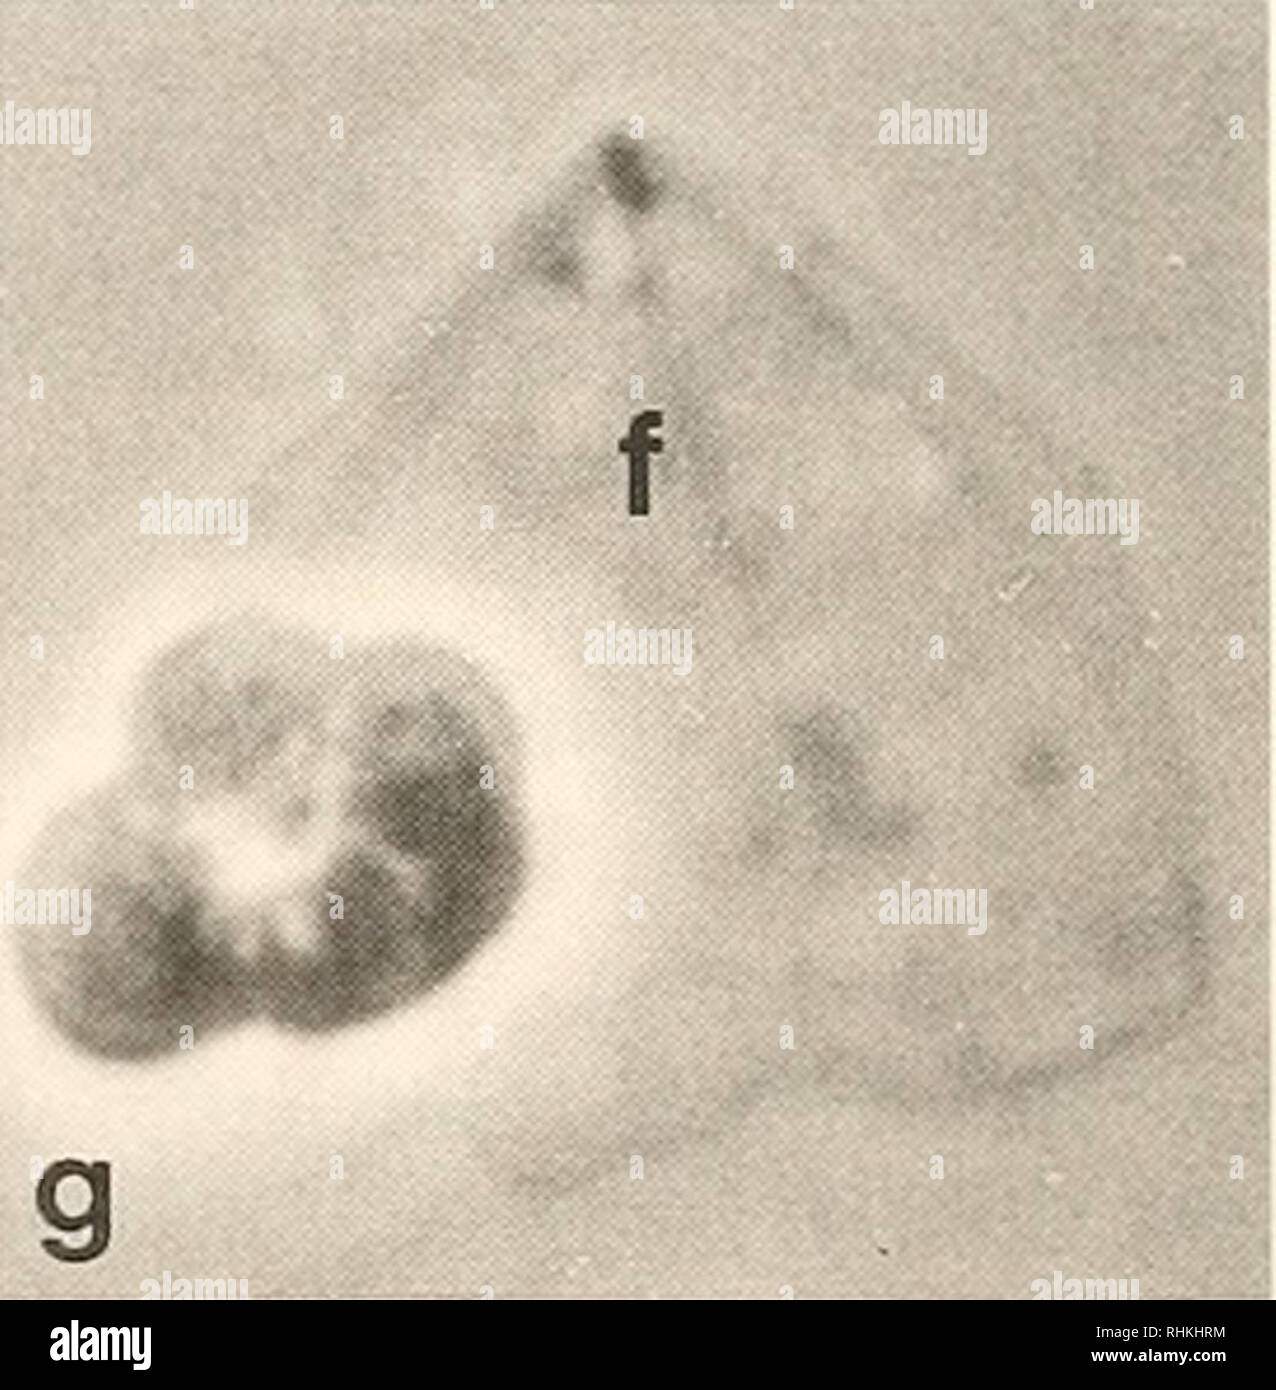 . Le bulletin biologique. Biologie ; zoologie ; biologie ; biologie marine. f Figure 3. Ciilypt cytosquelettes d(&gt;j&gt;enii érythrocytes kilnwri ; microscopie à contraste de phase, (a-d) Exemples de cytosquelettes dans lequel les centrioles sont réglées comme une paire de points "dense" (pointes) ; e- g) sous la lamelle aplati cytosquelettes pour améliorer la visualisation des fibres (f) rayonnant de l'centrosomal région. Les bandes marginales des microtubules ne sont pas présents. Conditions : (a) et (e-g). Lyse Brij moyen, pas de glutaraldéhyde ; (b. cl, Triton lysis médium  + glutaraldéhyde ; (d). Lyse Brij med Banque D'Images